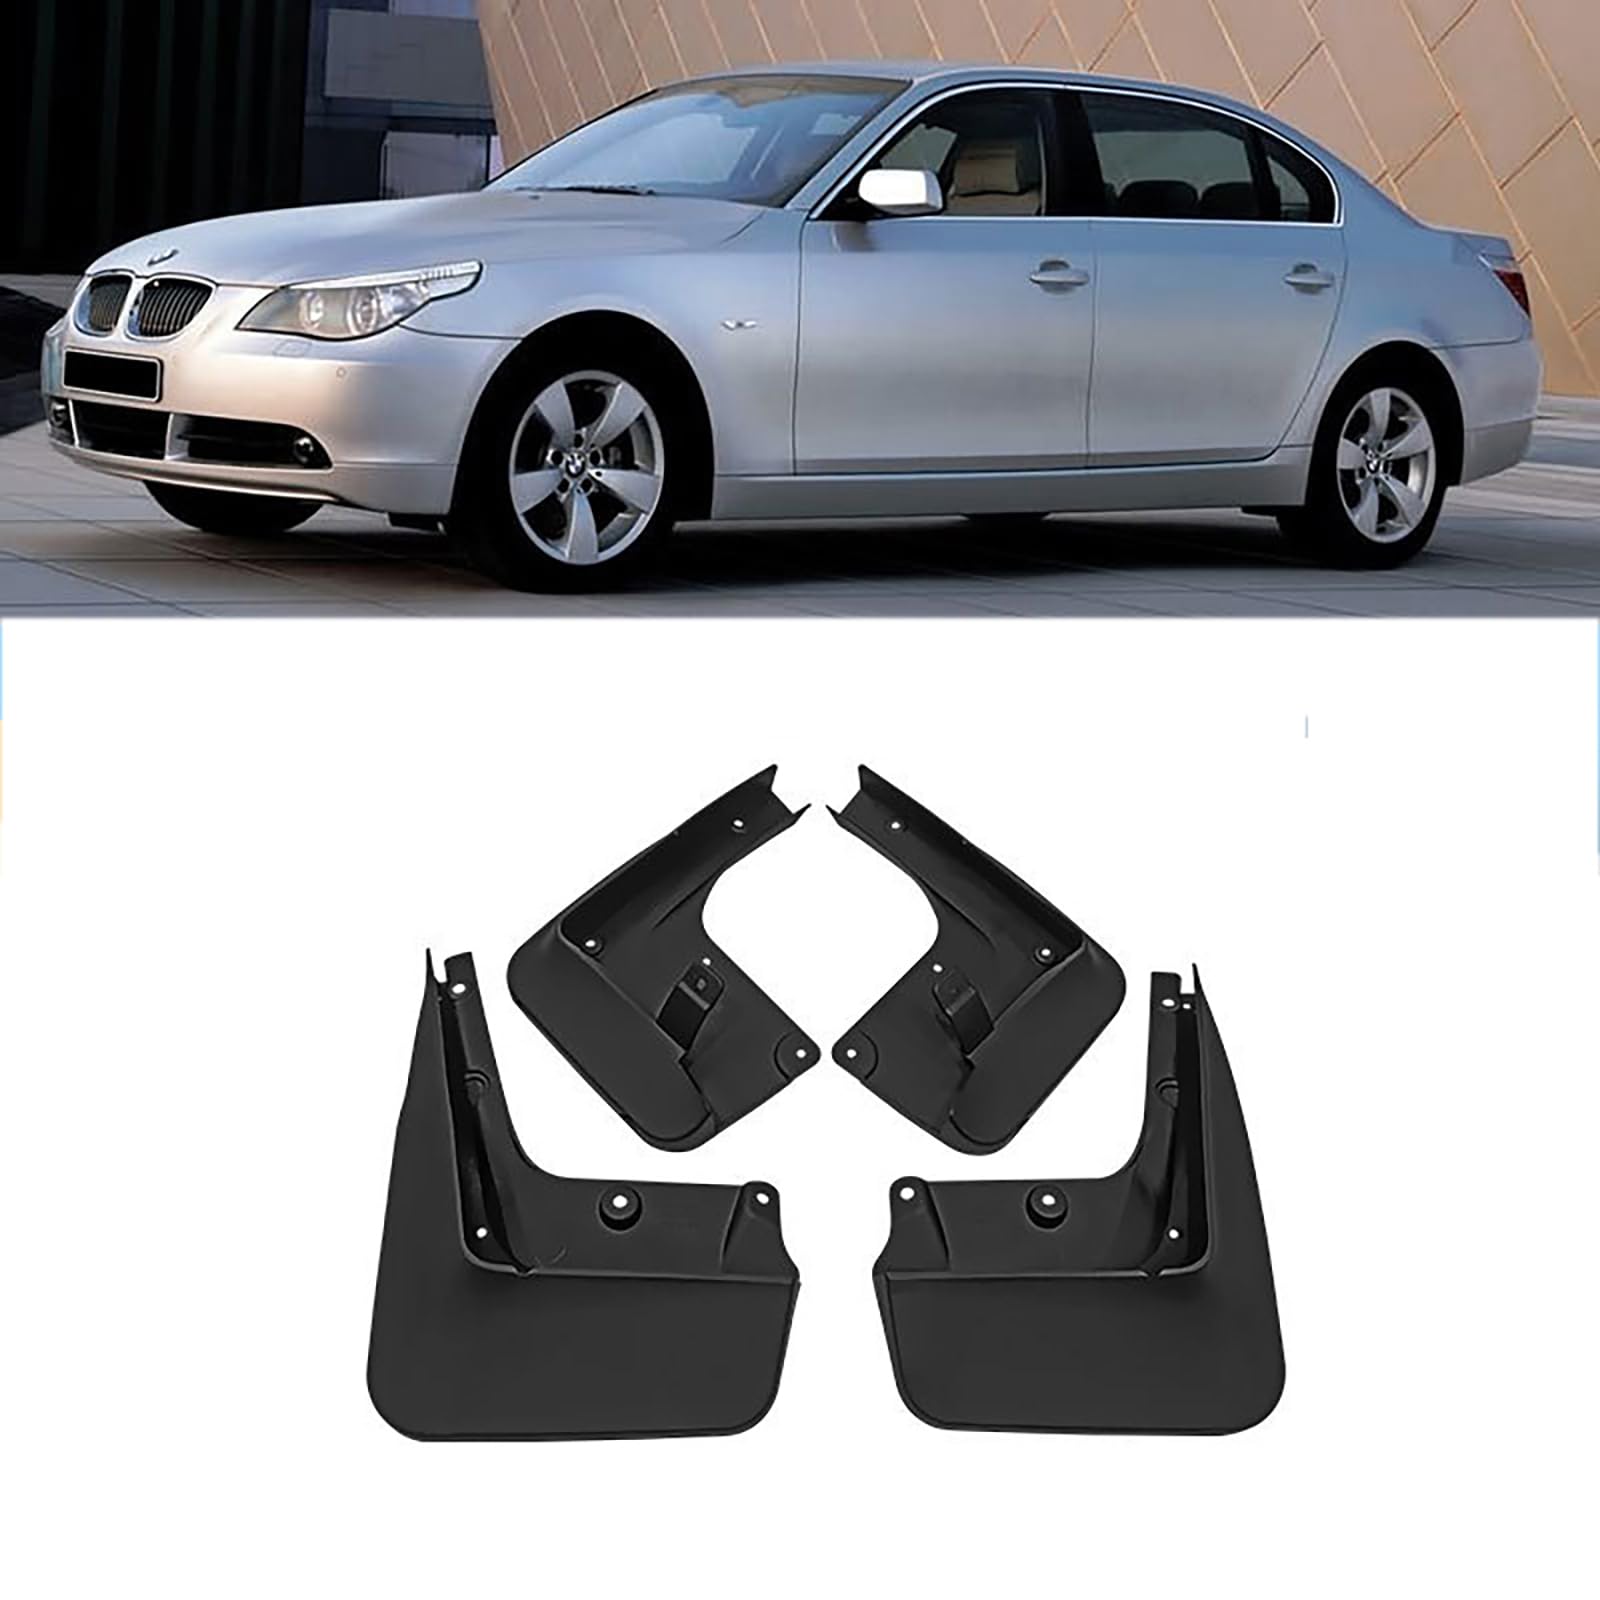 Kompatibel mit BMW 5 Series 2005-2010, 4 Stück Autokotflügel, Spritzschutz, Schmutzfänger, Schutzbleche gegen Sand von YPSBBHD